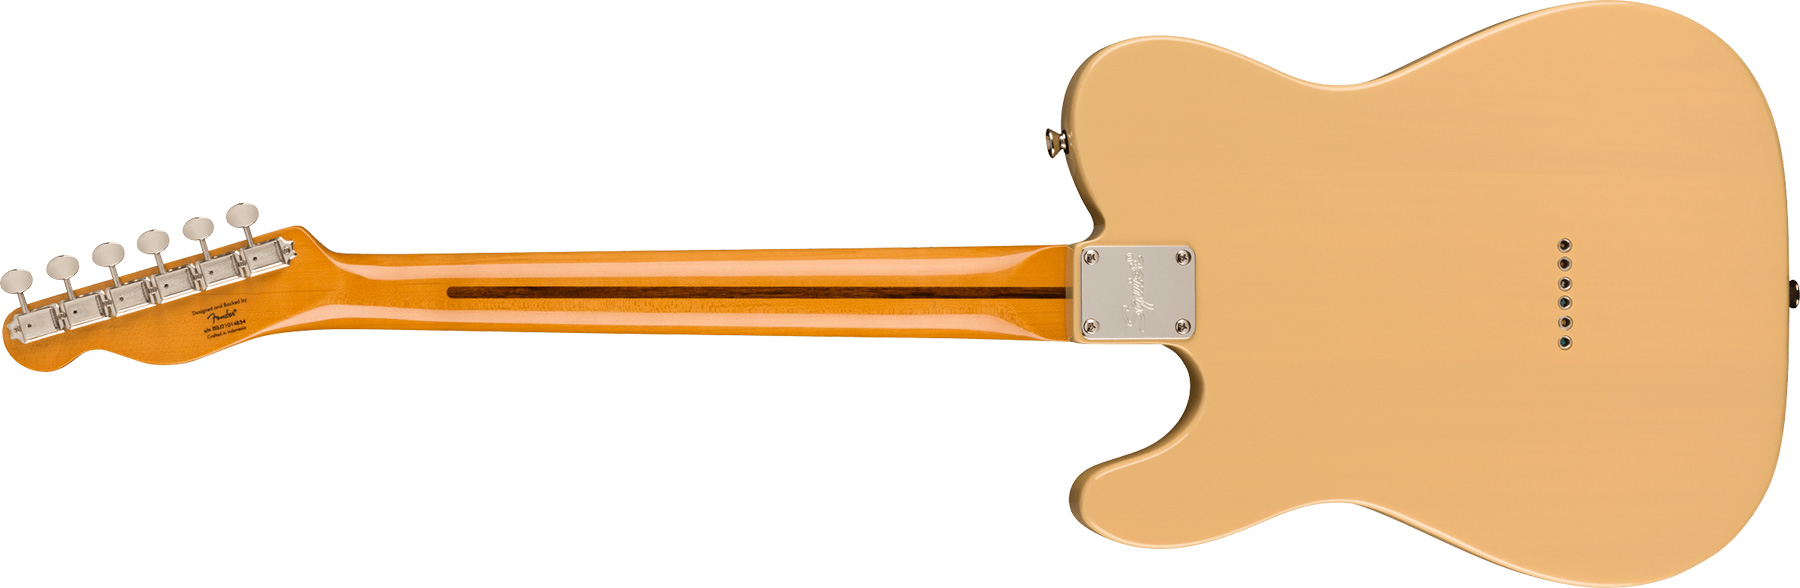 Squier Tele '50s Parchment Pickguard Classic Vibe Fsr 2s Ht Mn - Vintage Blonde - Tel shape electric guitar - Variation 1